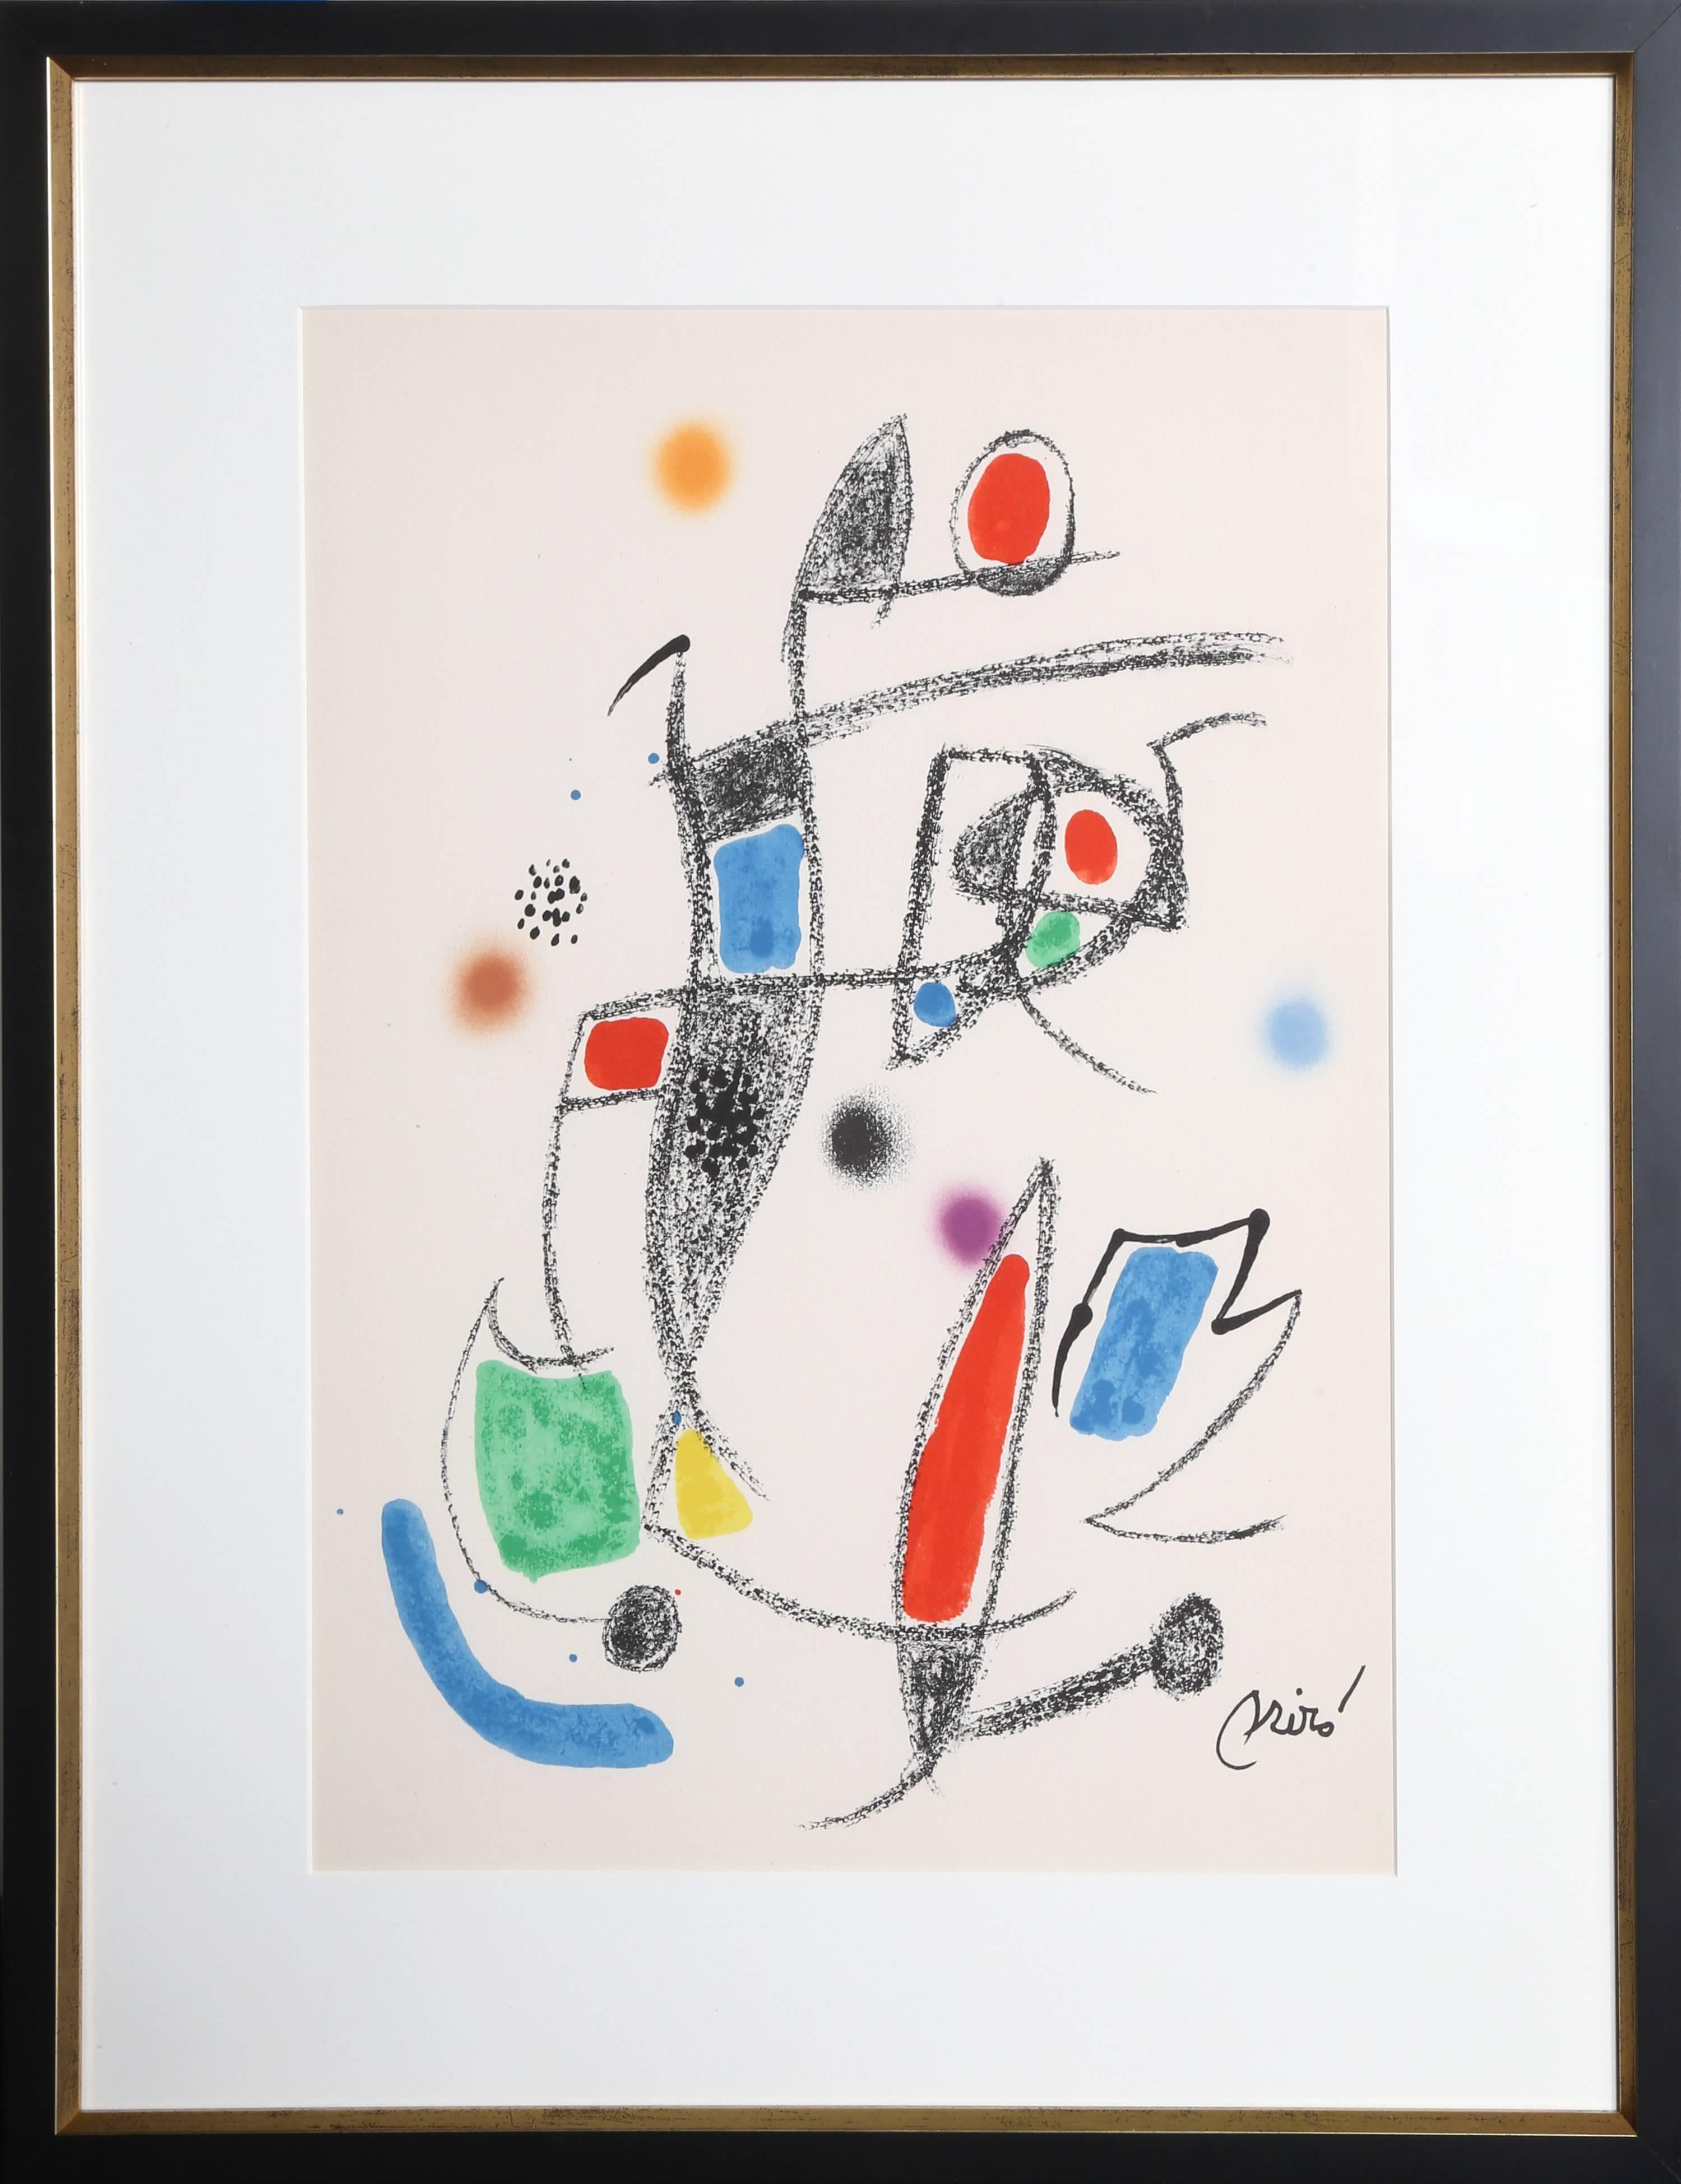 Joan Miró Abstract Print - Maravillas con Variaciones Acrosticas en el jardin de Miro (Number 12)